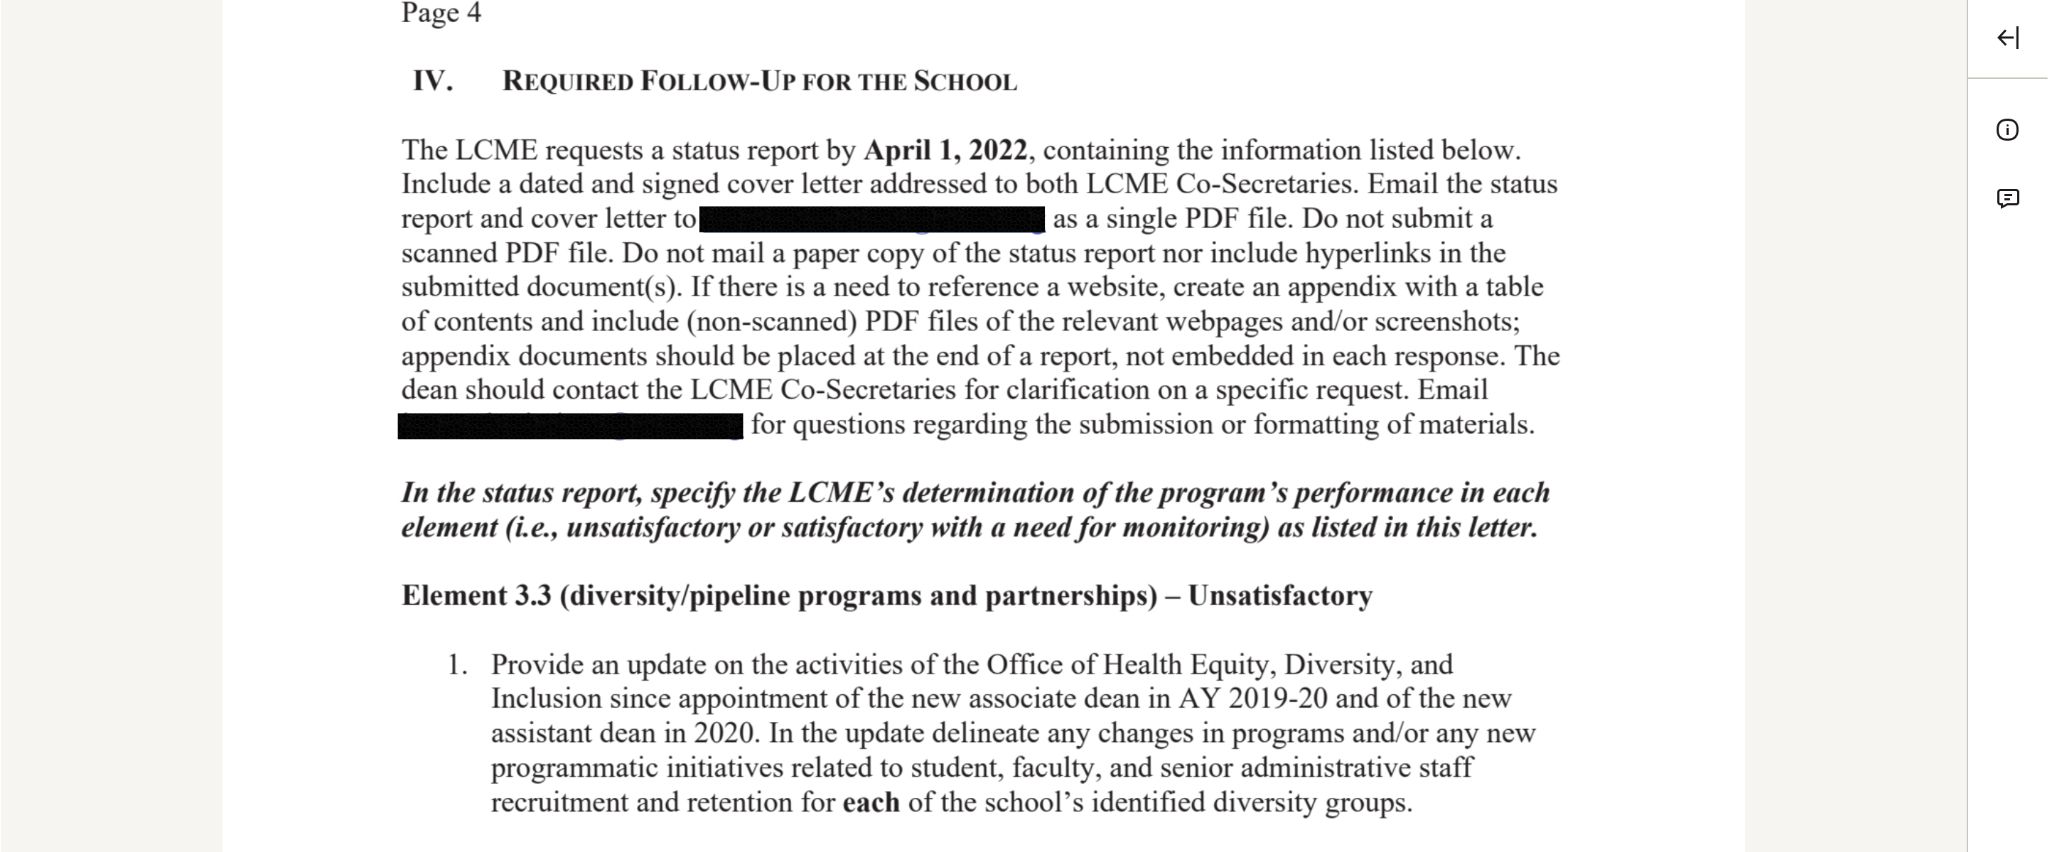 LCME email to Utah School of Medicine